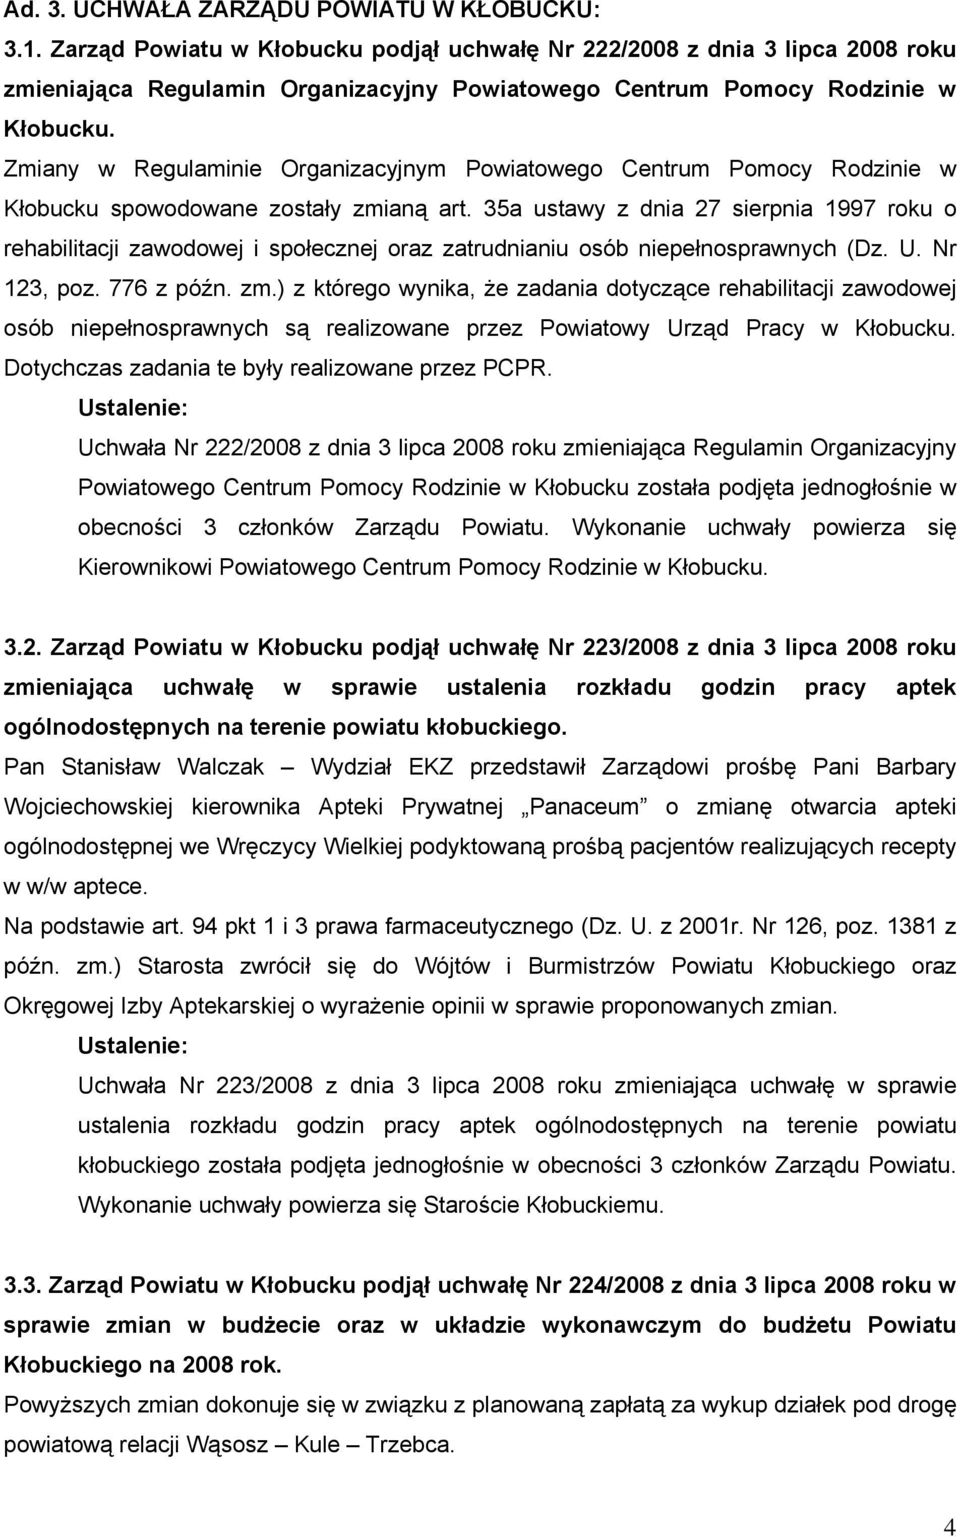 Zmiany w Regulaminie Organizacyjnym Powiatowego Centrum Pomocy Rodzinie w Kłobucku spowodowane zostały zmianą art.